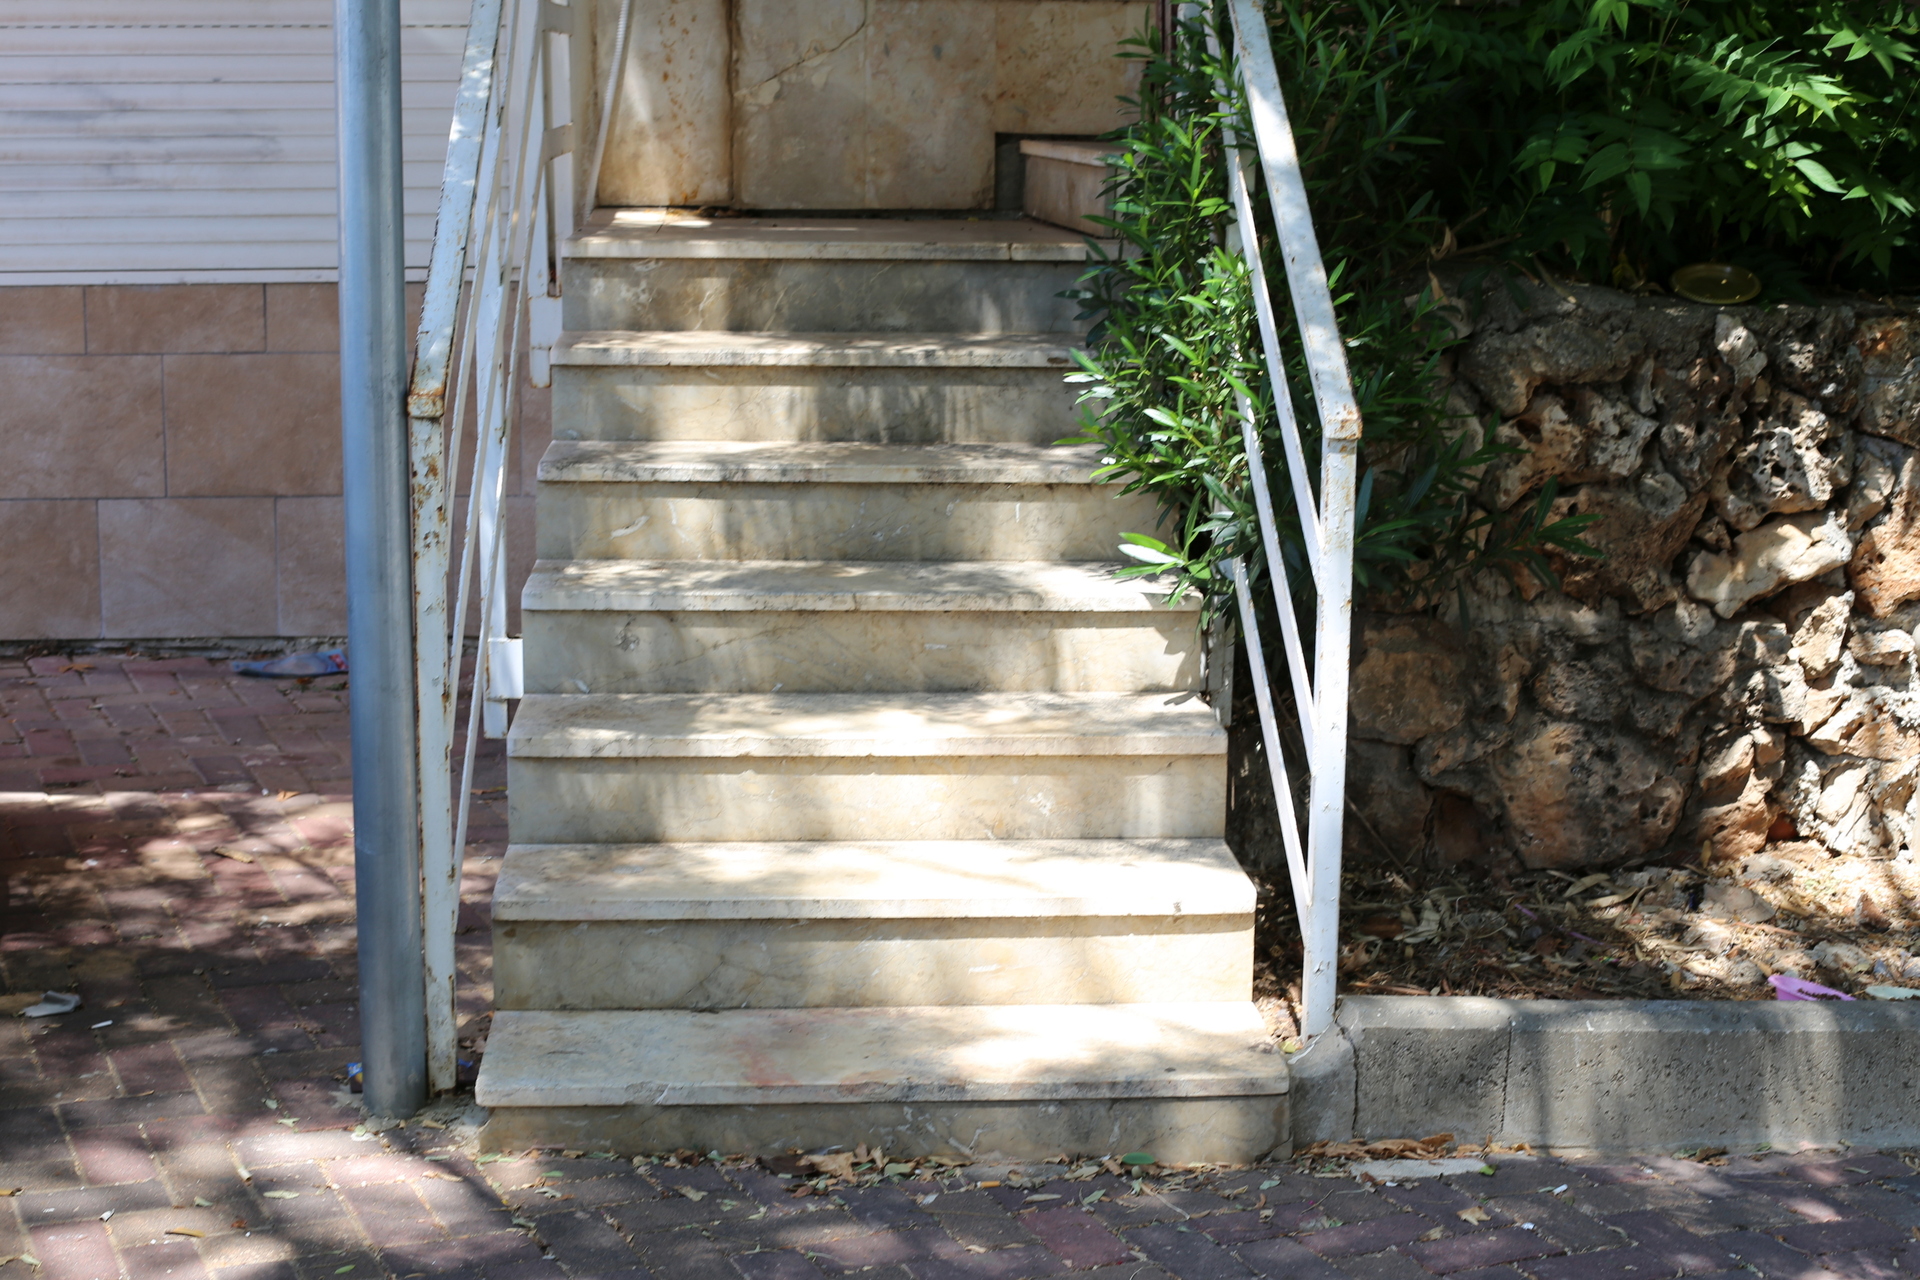 Na obrazku widoczne są stare zewnętrzne schody, które wymagają gruntownego remontu. Ich powierzchnia jest wytarta, a poszczególne stopnie są uszkodzone. Ta obrazkowa scena ukazuje potrzebę odnowienia tych schodów i przywrócenia im estetycznego wyglądu oraz bezpiecznej kondycji